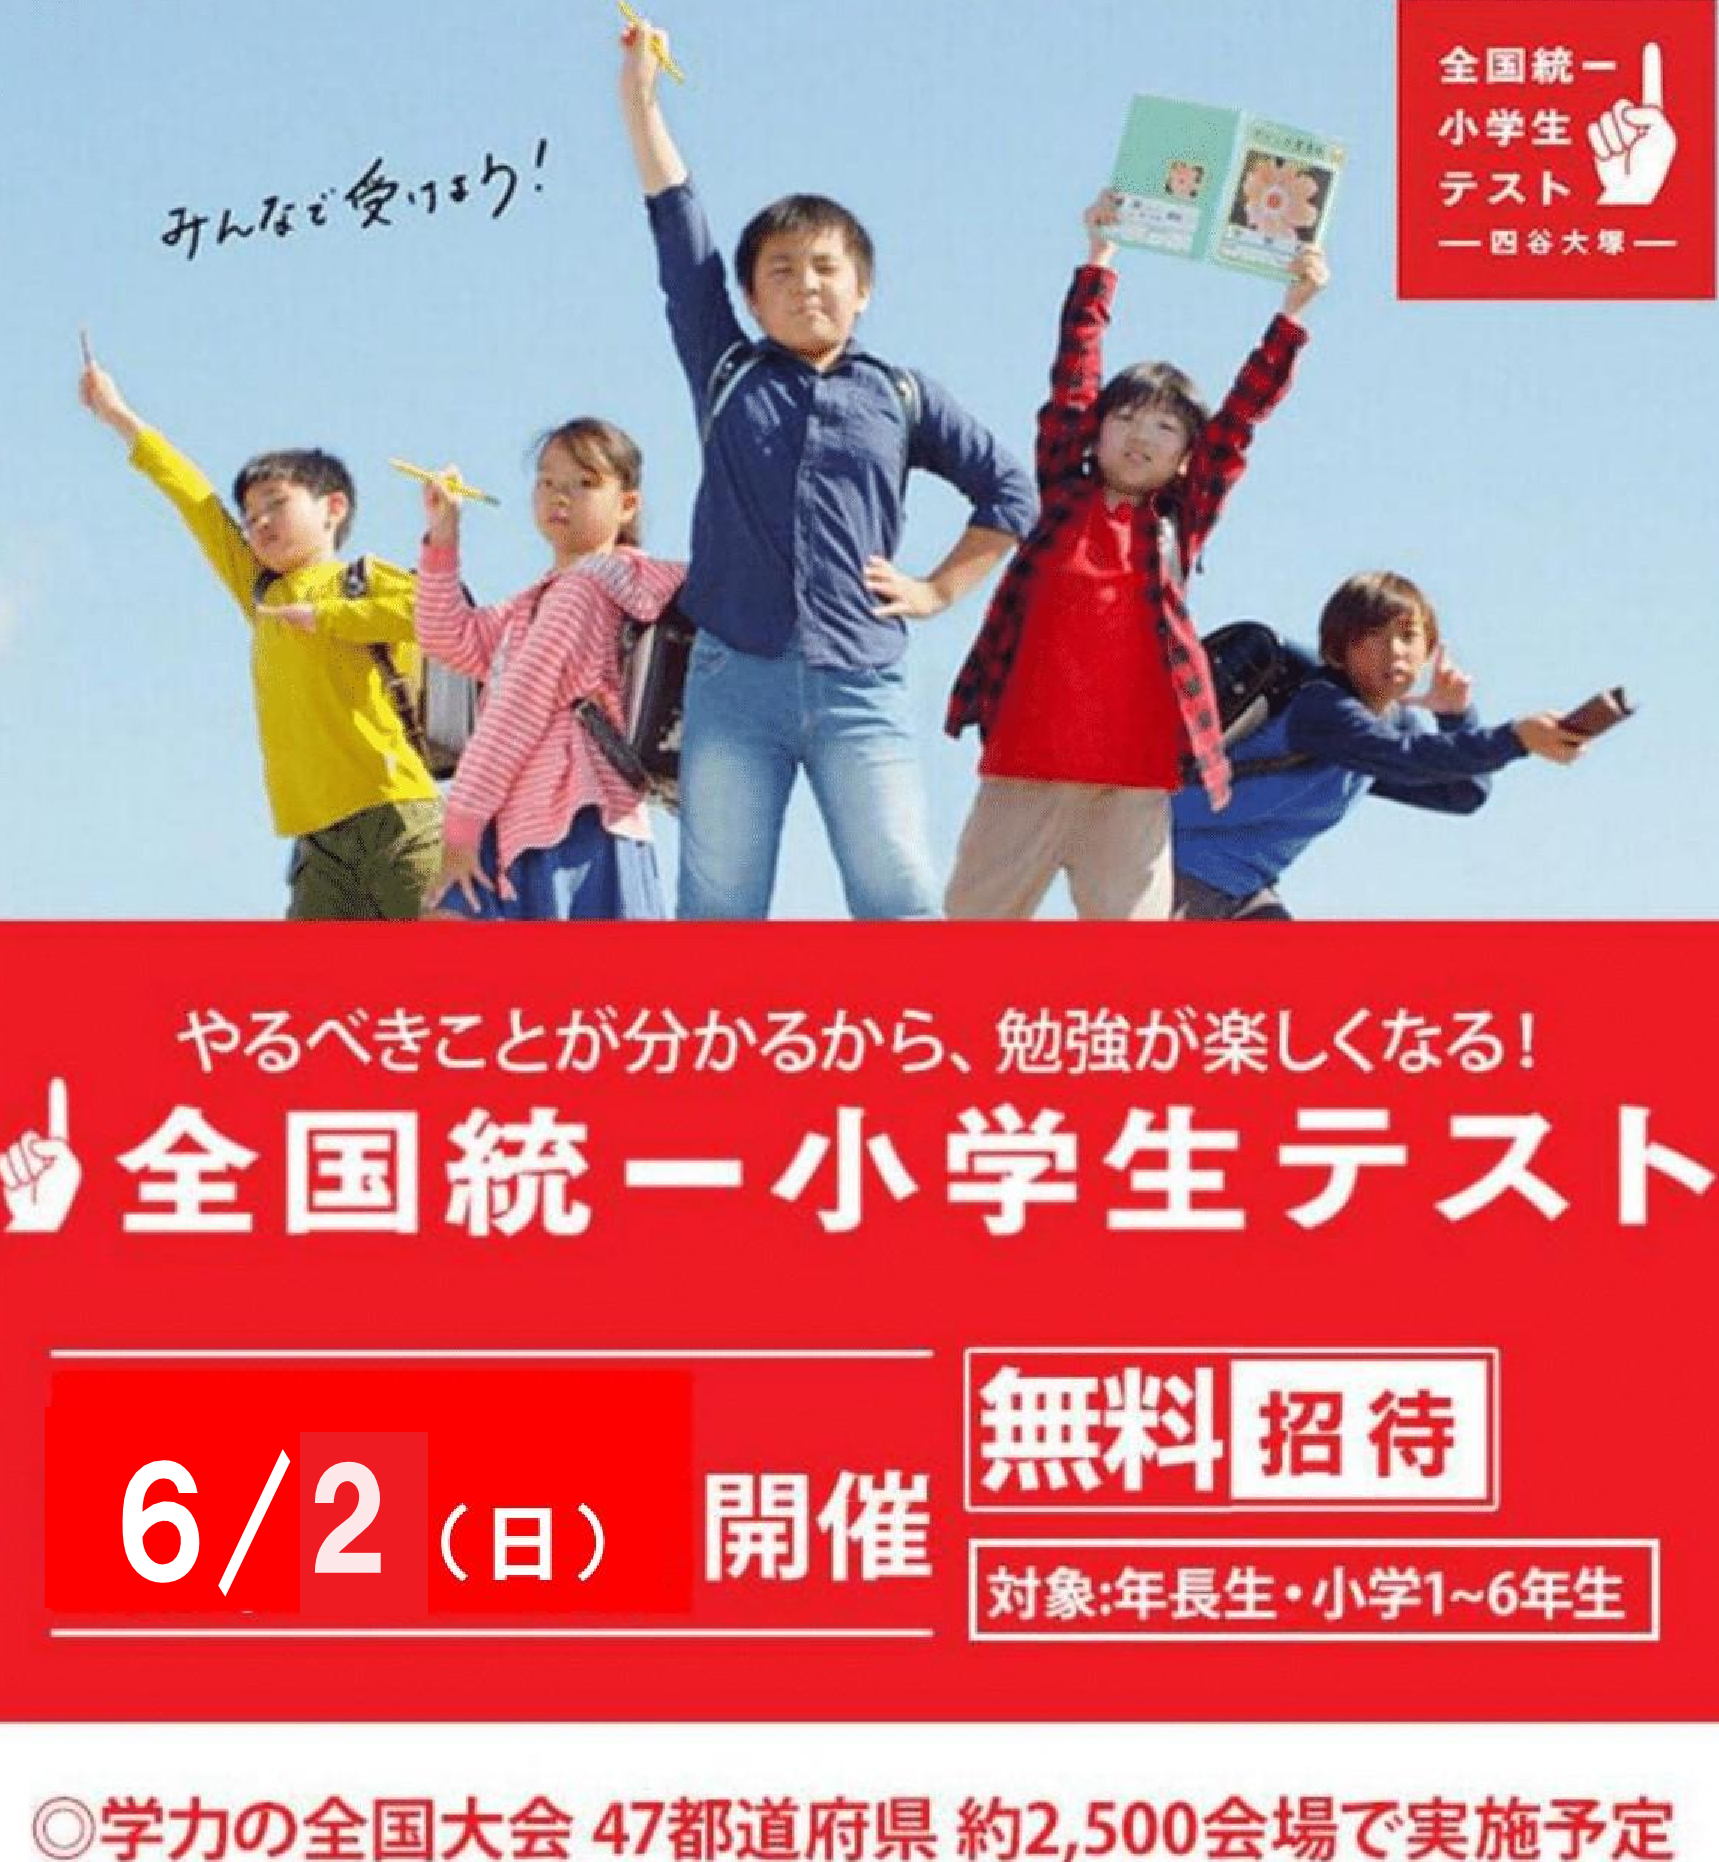 〔全国統一小学生テスト〕日本をテストします。